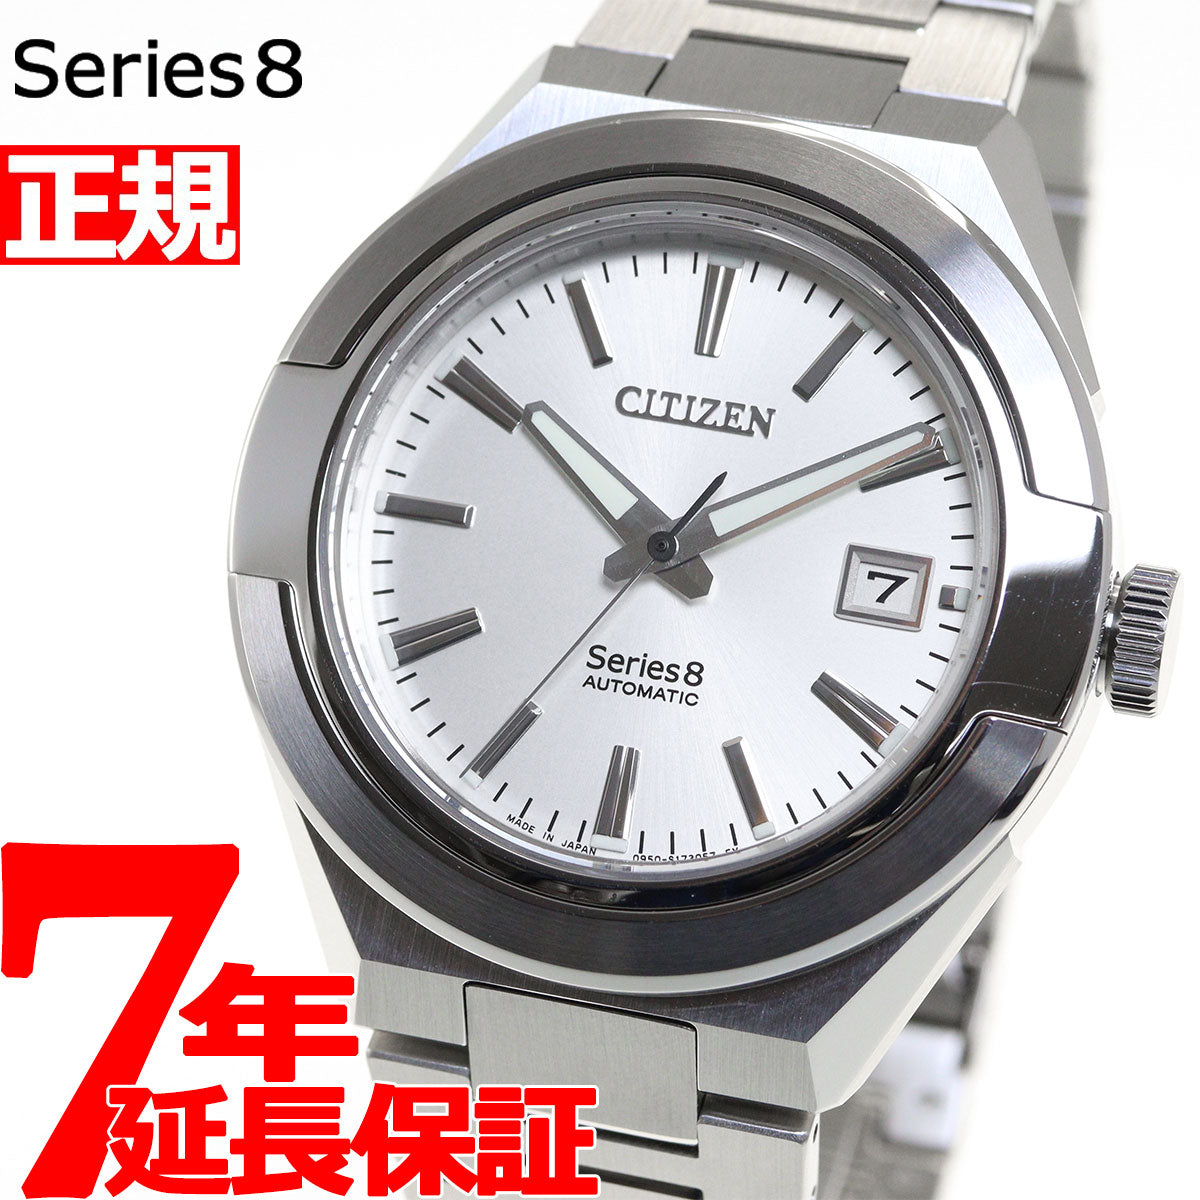 シチズン CITIZEN シリーズエイト Series 8 870 腕時計 メンズ 